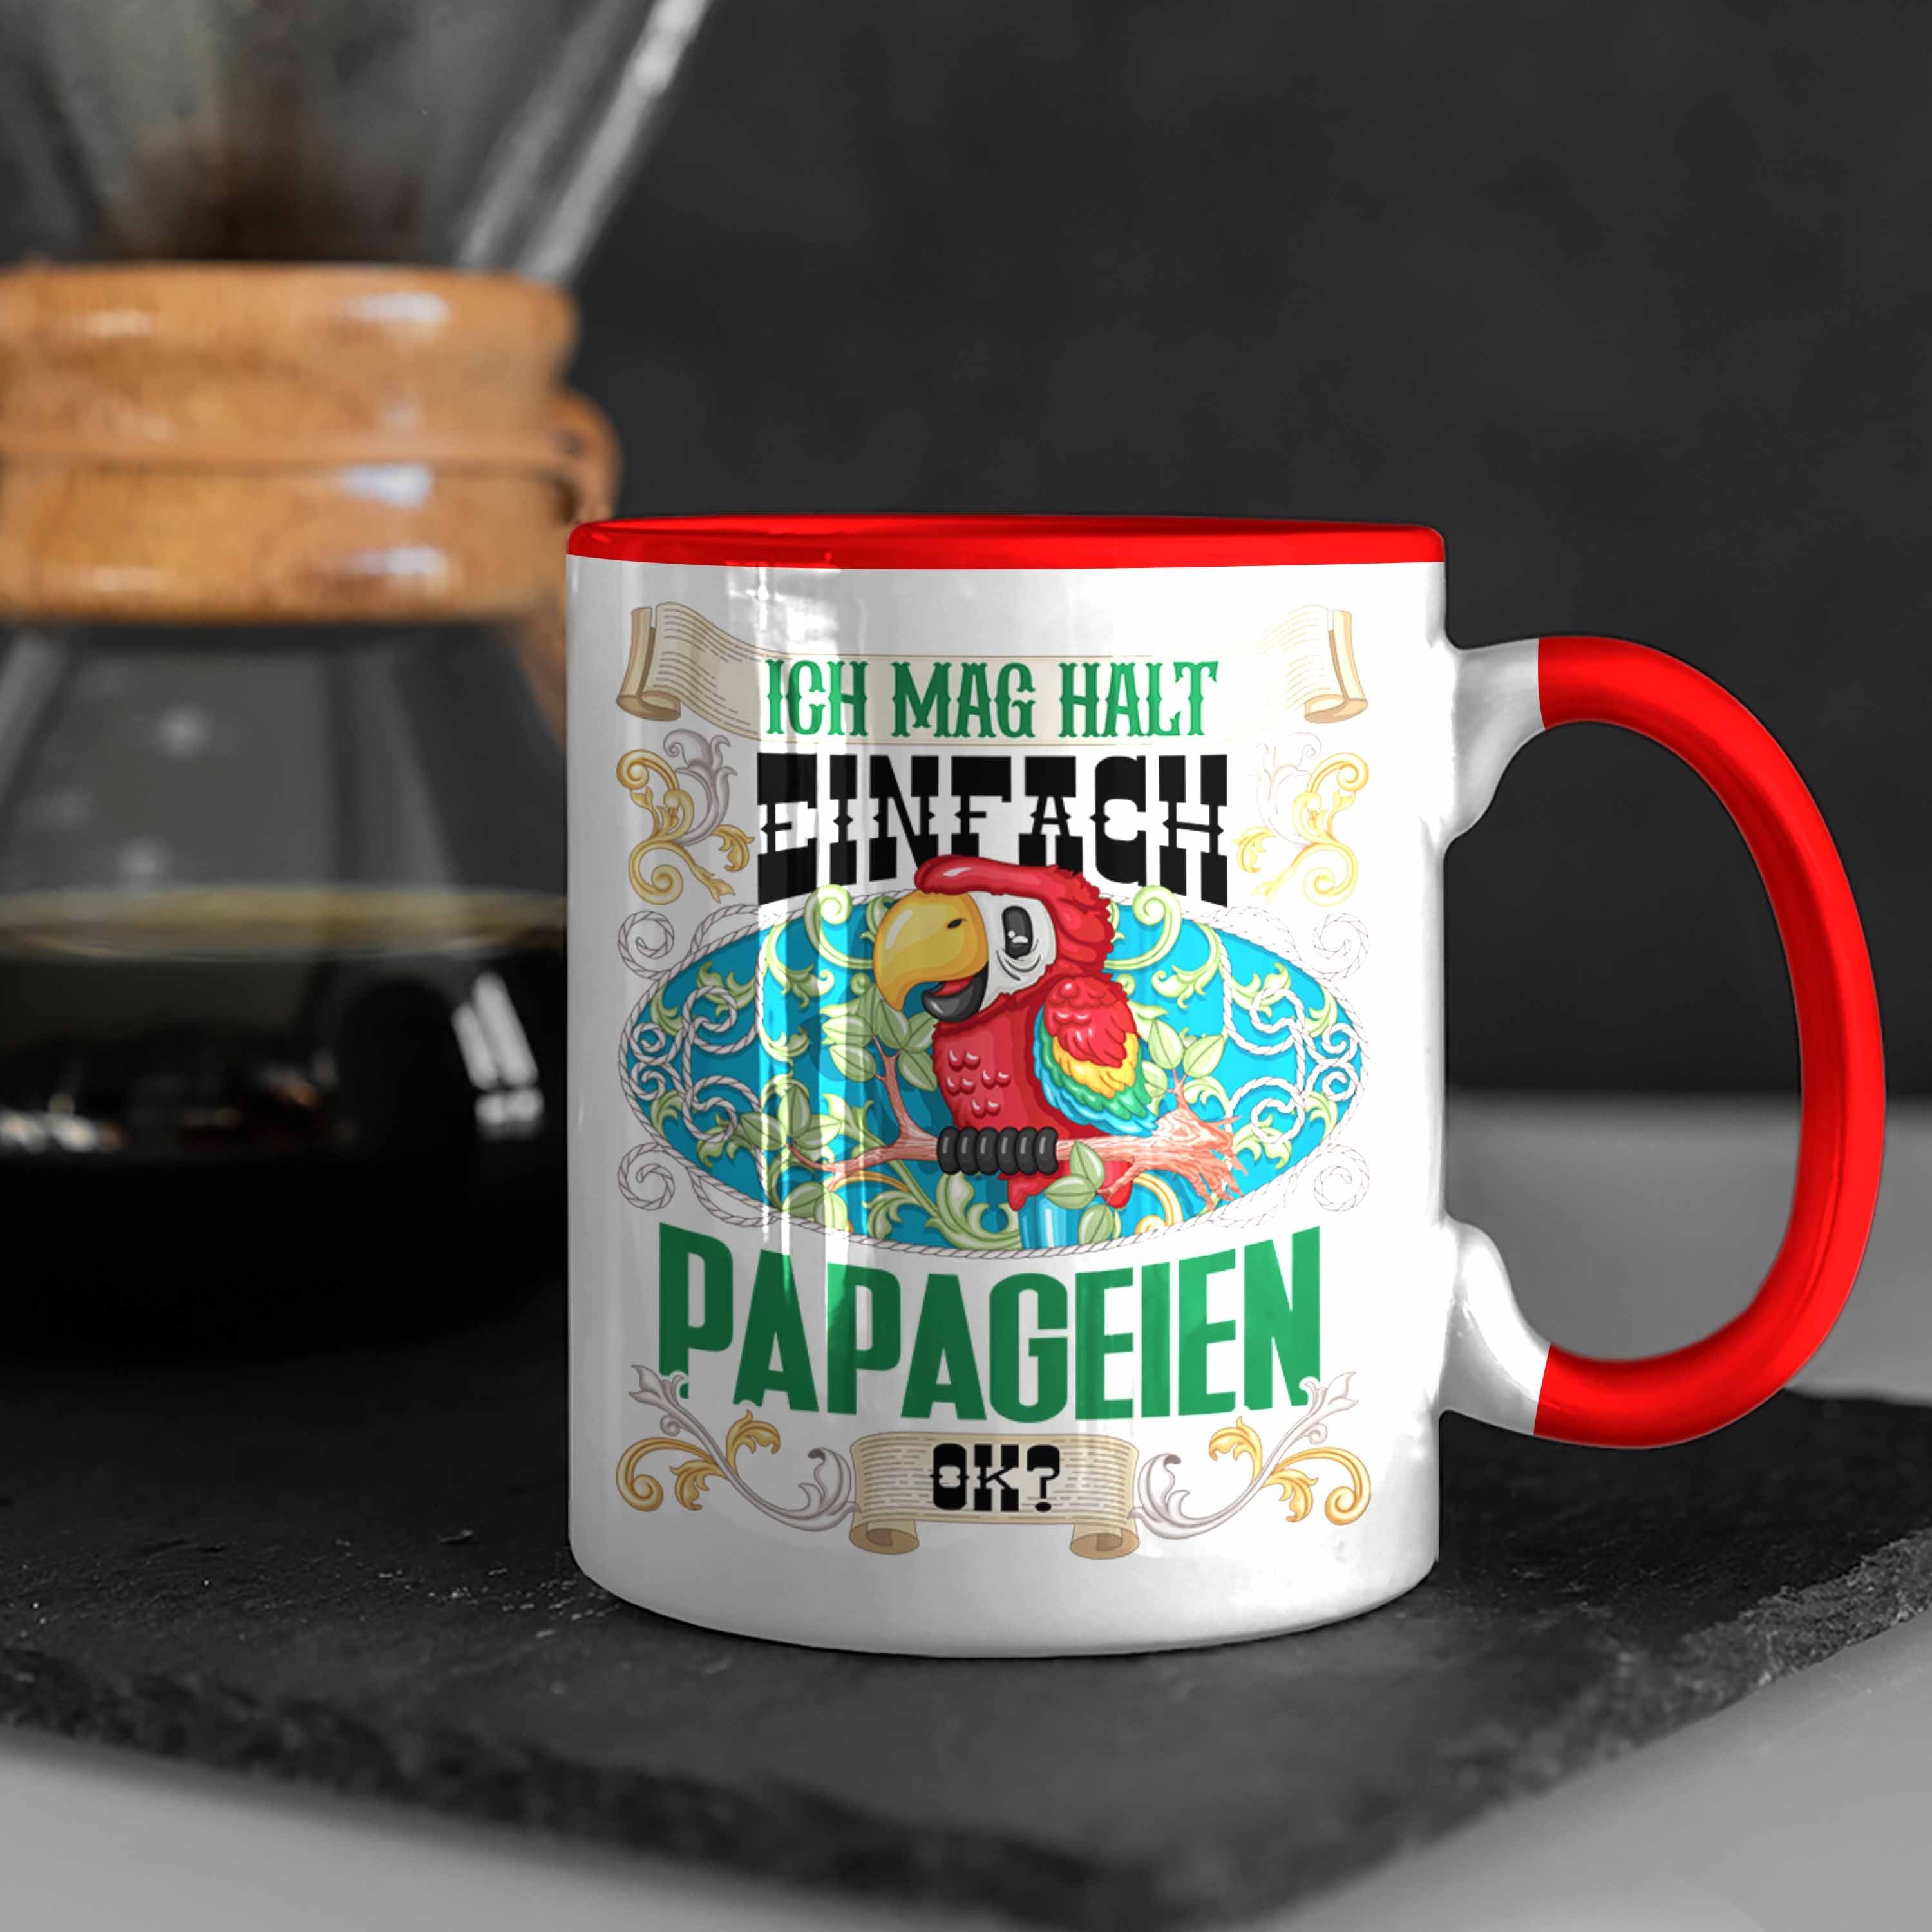 Einfach für Halt Trendation L Papageien Papageien Geschenkidee Tasse Mag Rot Ich Tasse Ok?